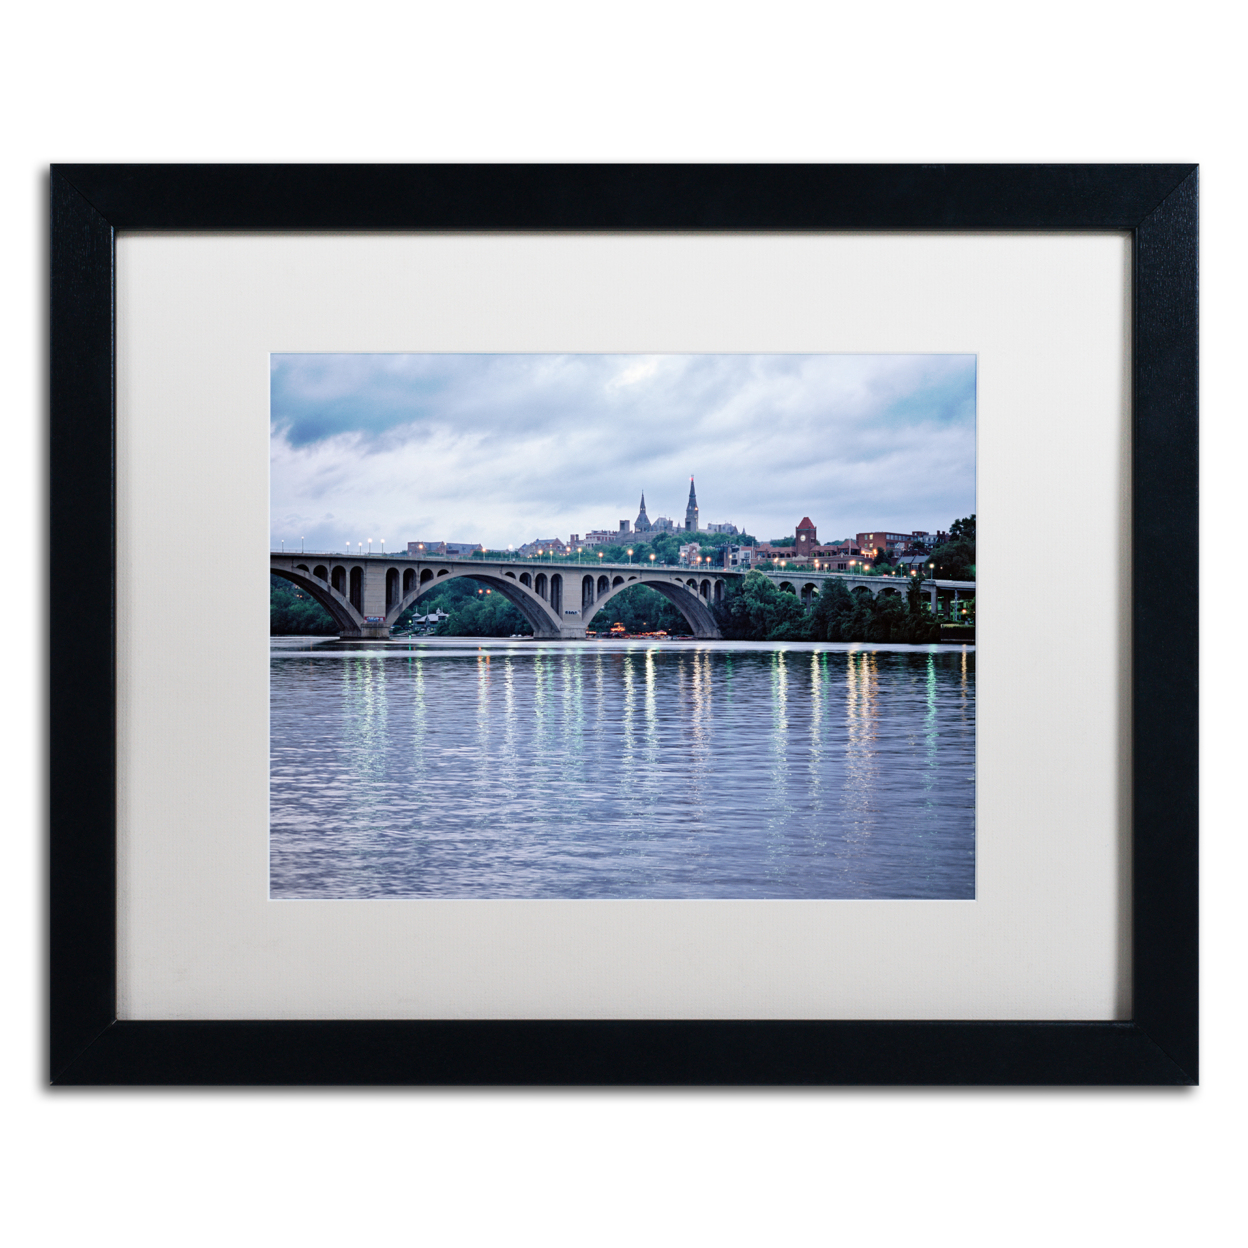 Gregory O'Hanlon 'Georgetown-Key Bridge' Black Wooden Framed Art 18 X 22 Inches